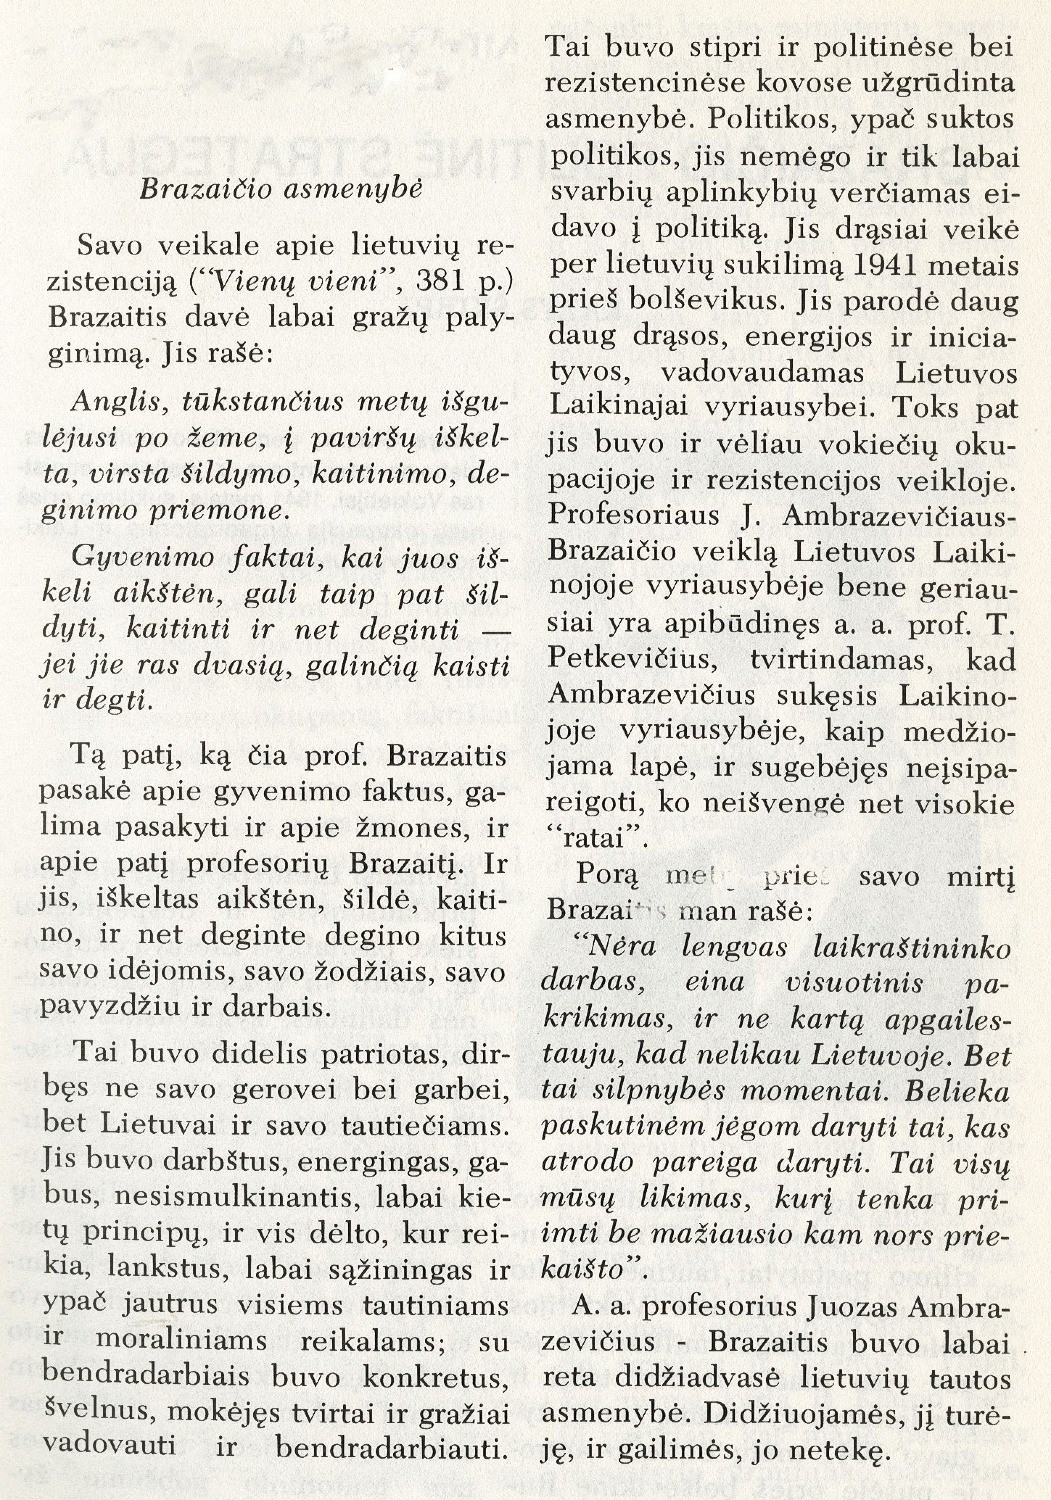 Juozas Brazaitis Laikinojoje Lietuvos vyriausybėje / Stasys Raštikis // Į laisvę. – 1975, Nr. 65, p. 7–15.